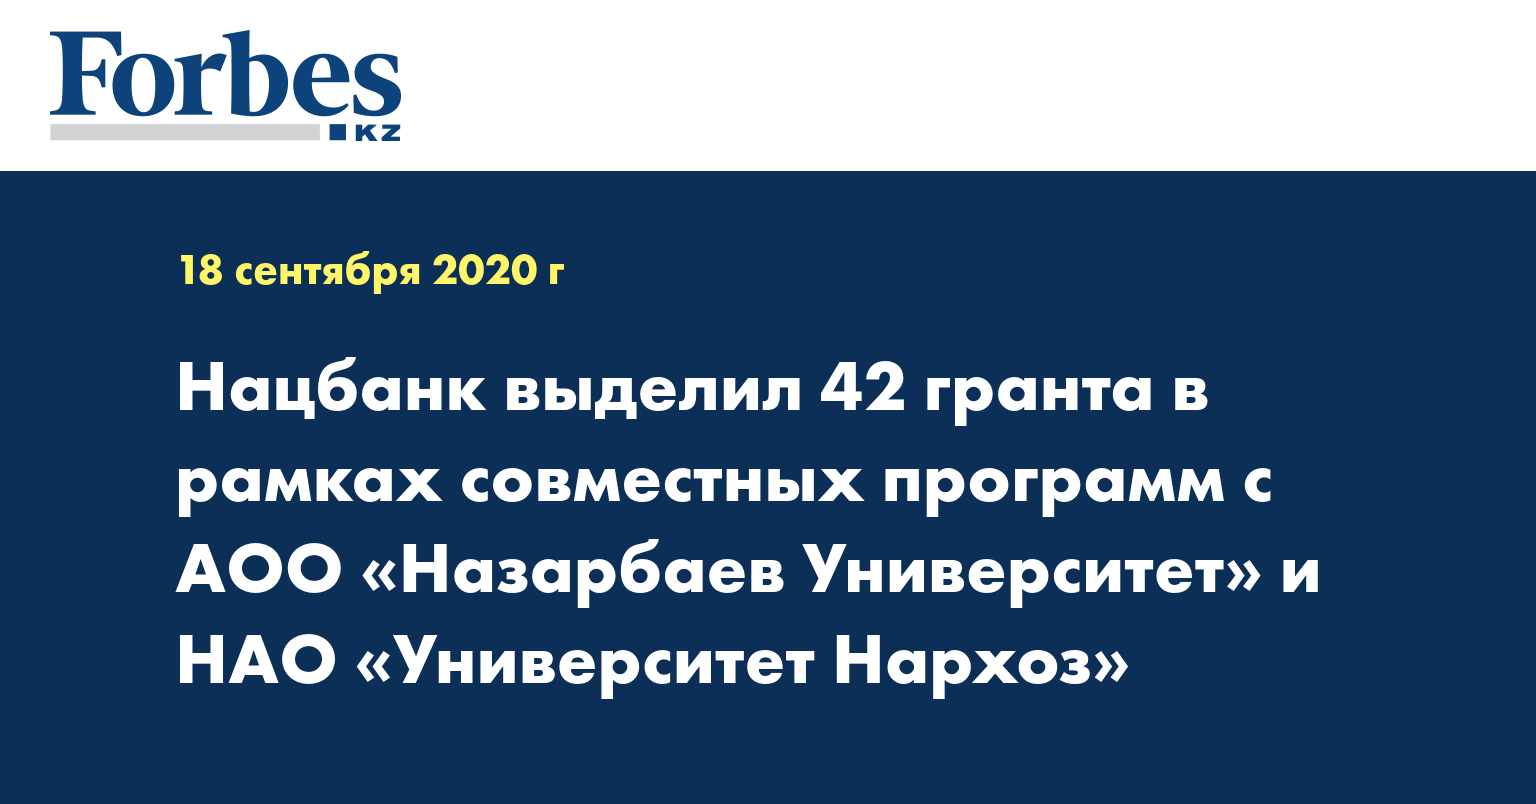 Нацбанк выделил 42 гранта в рамках совместных программ с АОО «Назарбаев Университет» и НАО «Университет Нархоз»